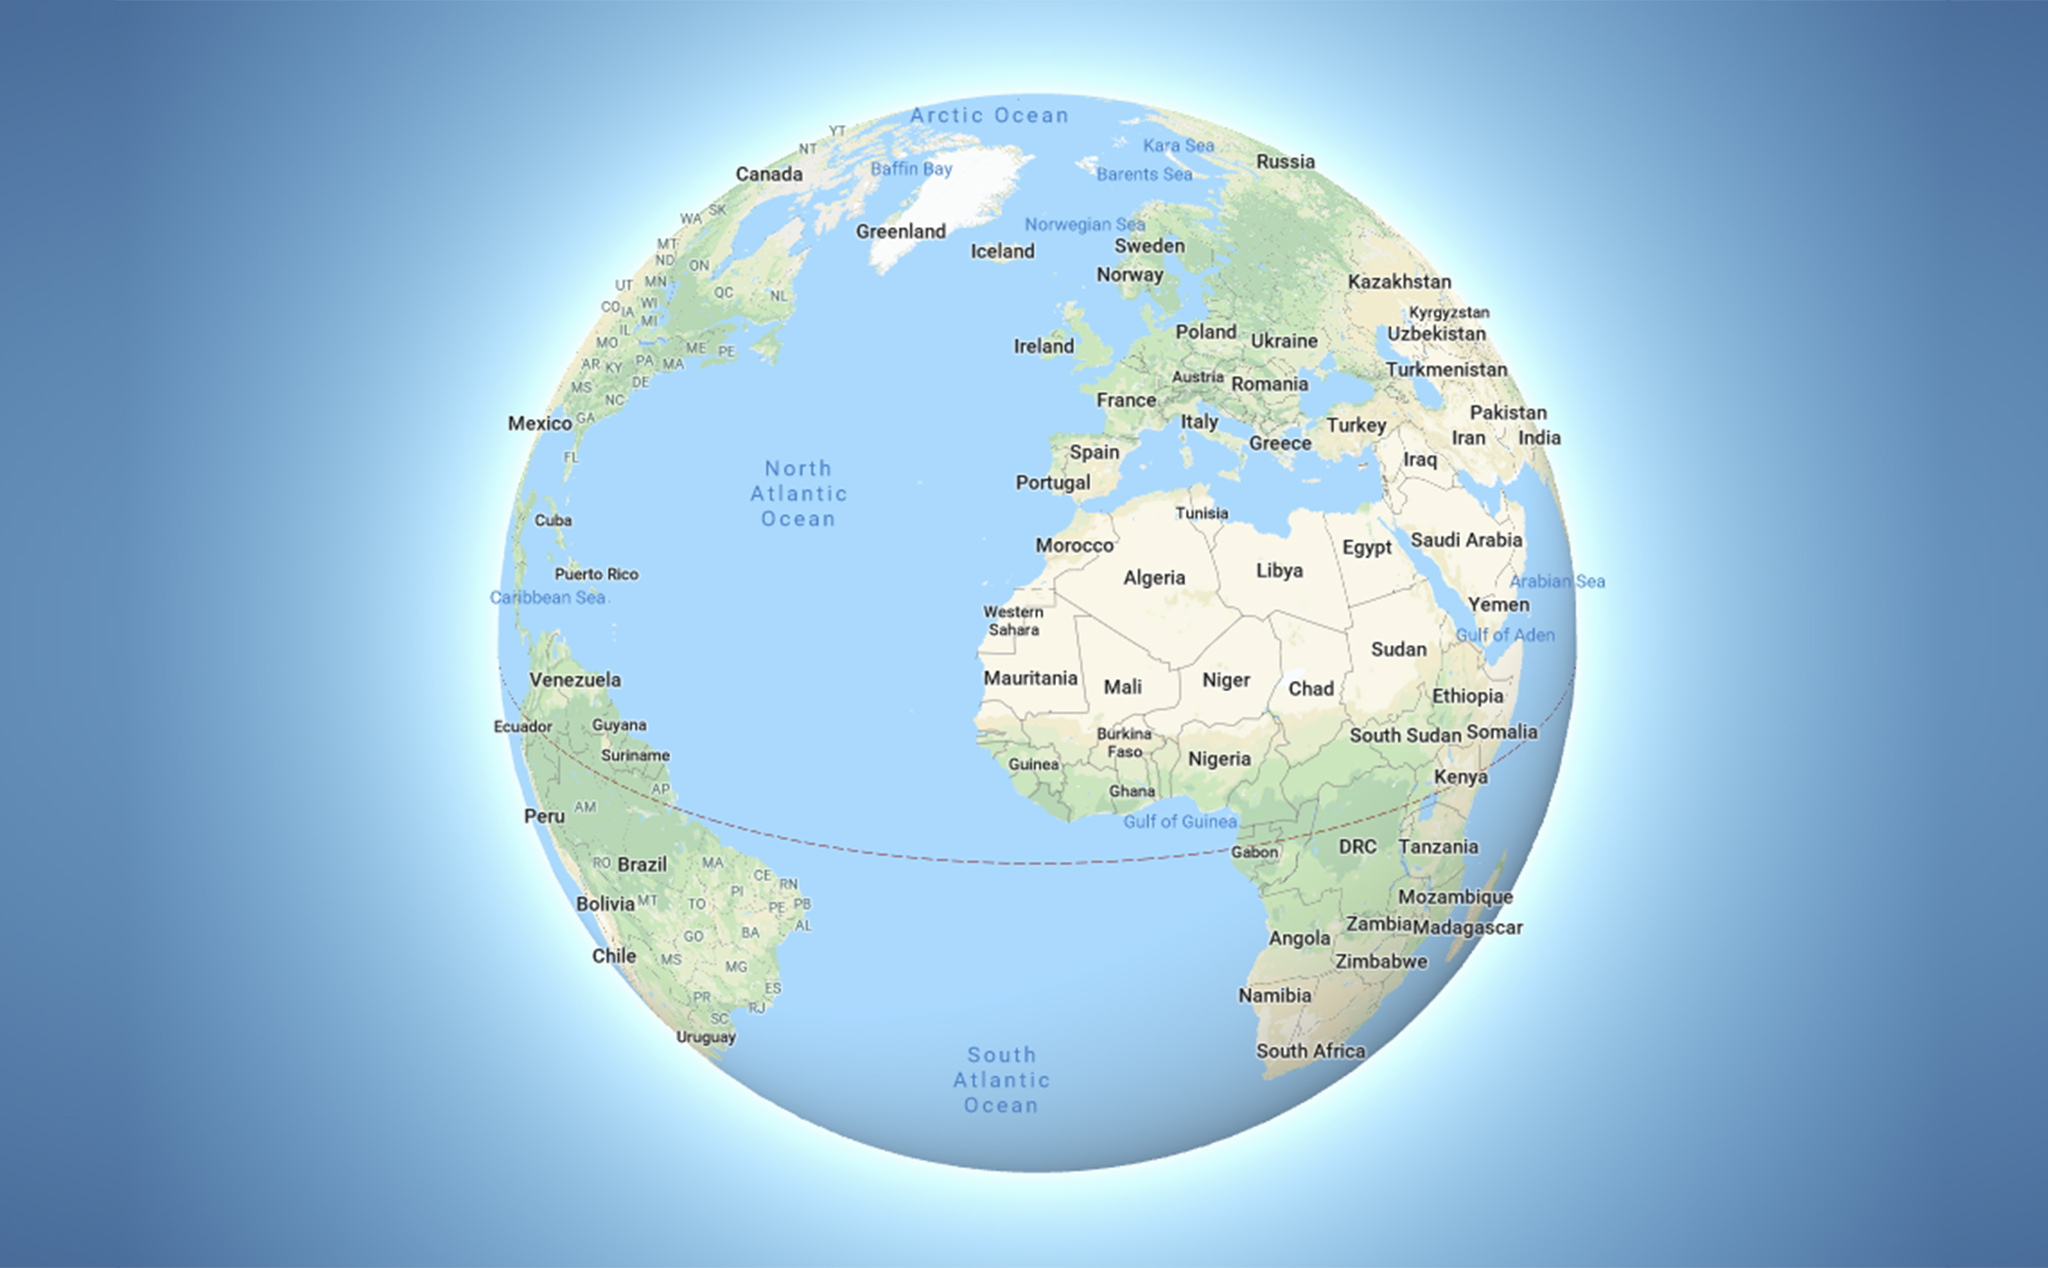 Google Maps chế độ 3D Globe: Chế độ 3D Globe của Google Maps đã được nâng cấp và cập nhật với hàng loạt tính năng tiên tiến. Khám phá thế giới như chưa bao giờ thấy với giao diện người dùng mới, hiển thị địa hình, đổ bóng và chi tiết nhất. Hãy khám phá thế giới với chế độ 3D Globe của Google Maps ngay bây giờ.